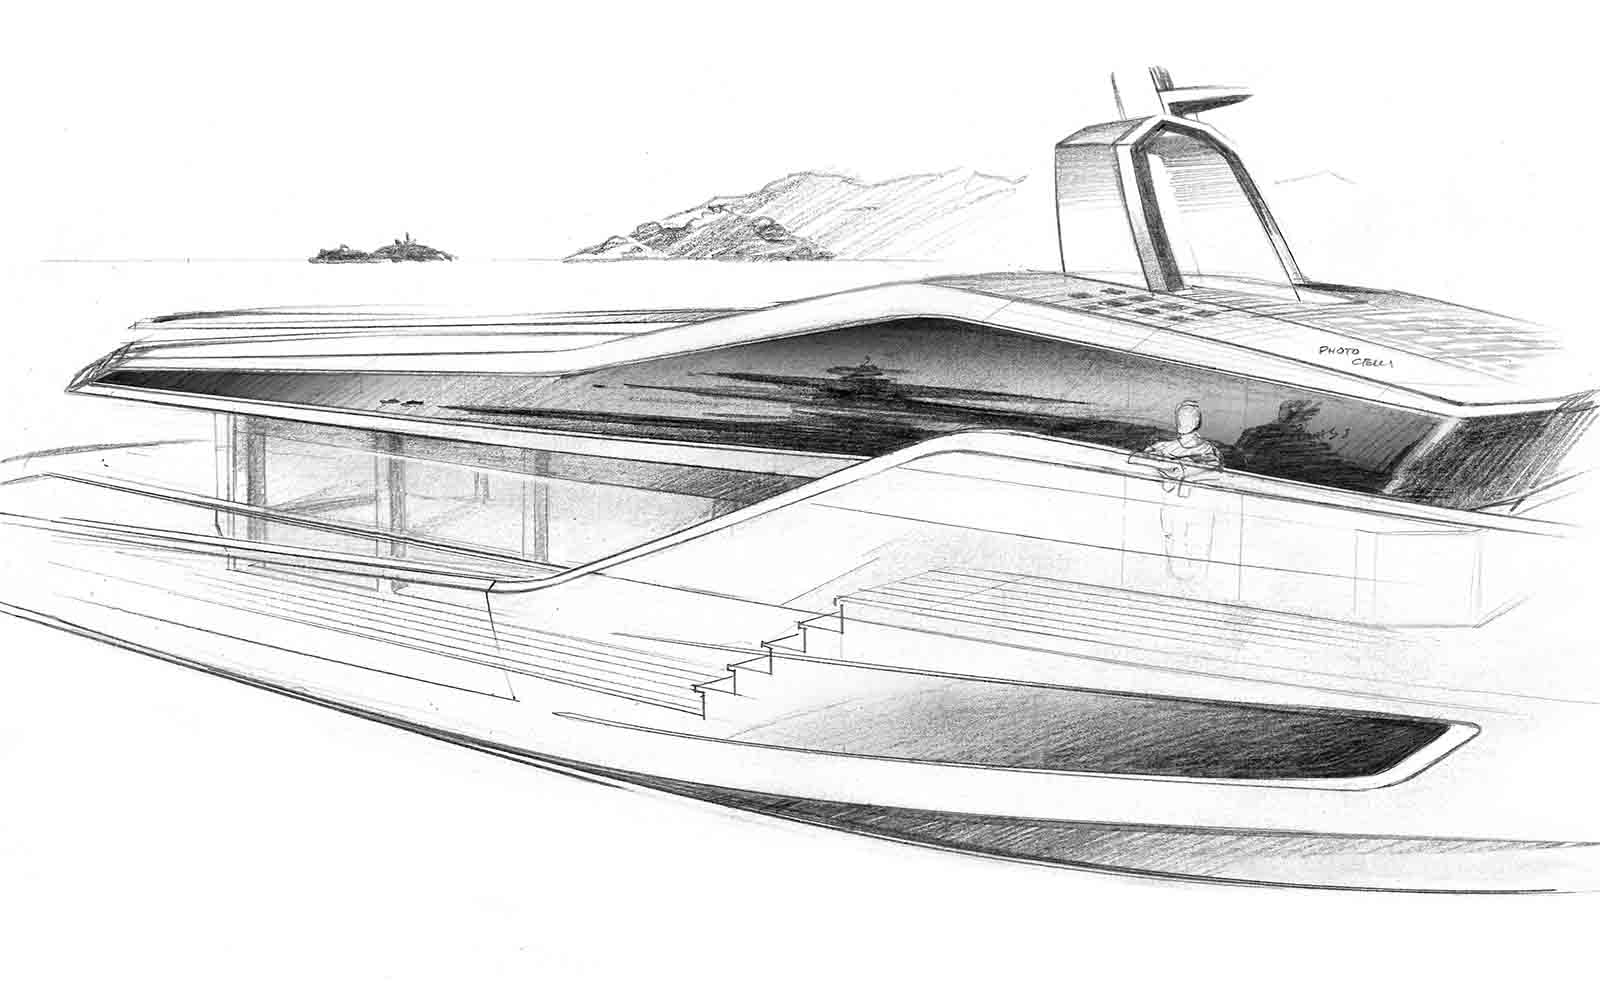 Intermarine Projeto Angra - boat shopping